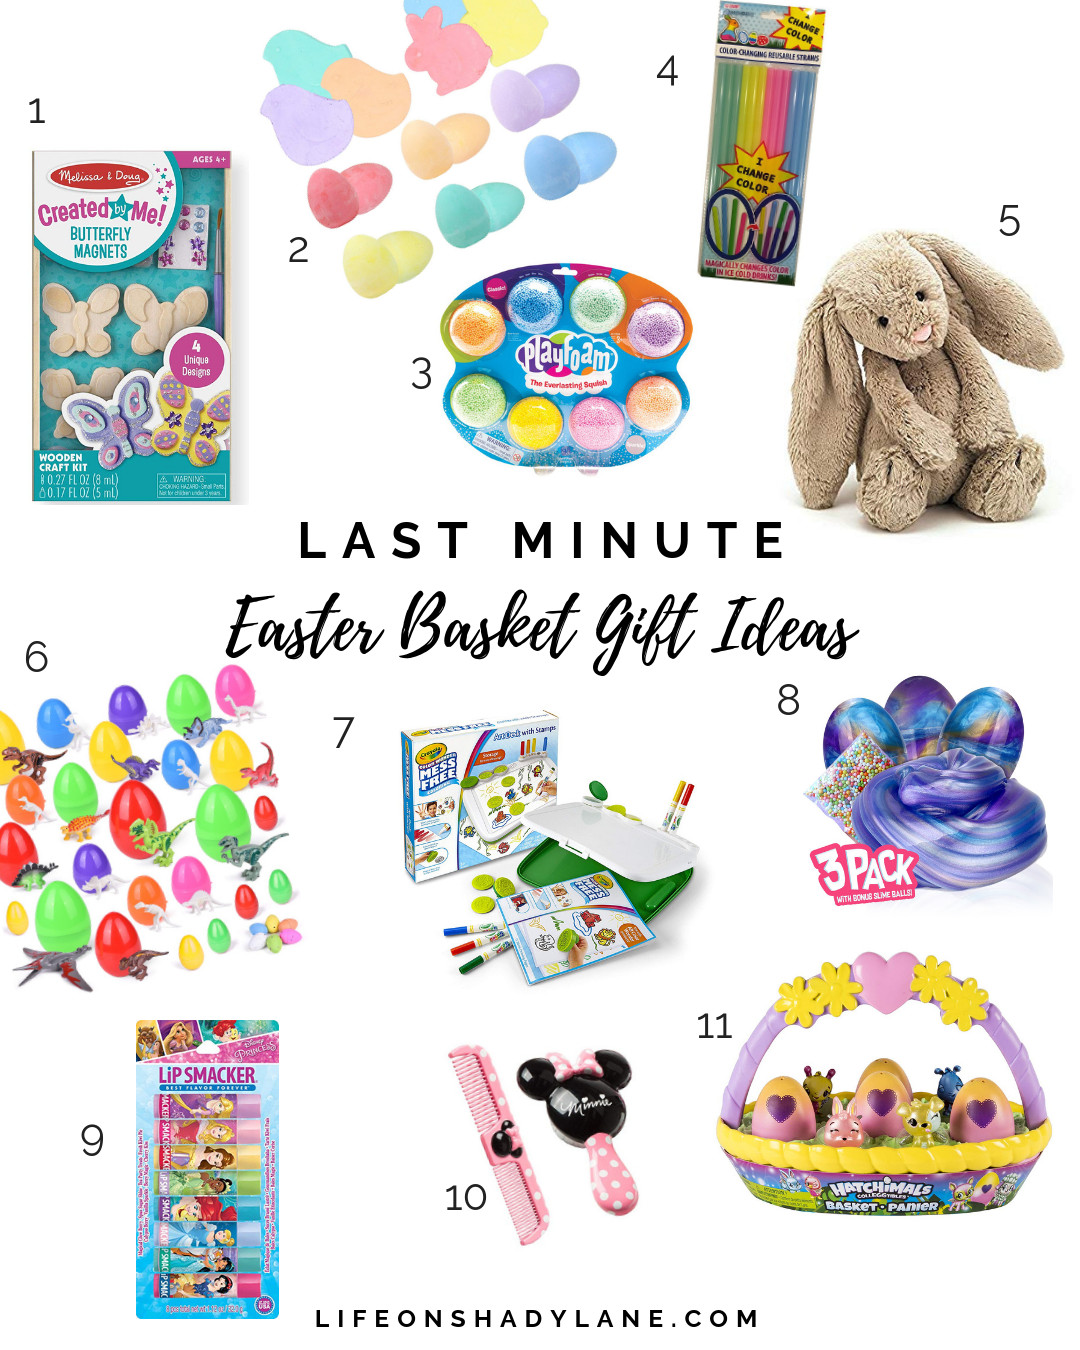 Last Minute Easter Basket Gift Ideas Kids
 Last Minute Easter Basket Gift Ideas Life on Shady Lane